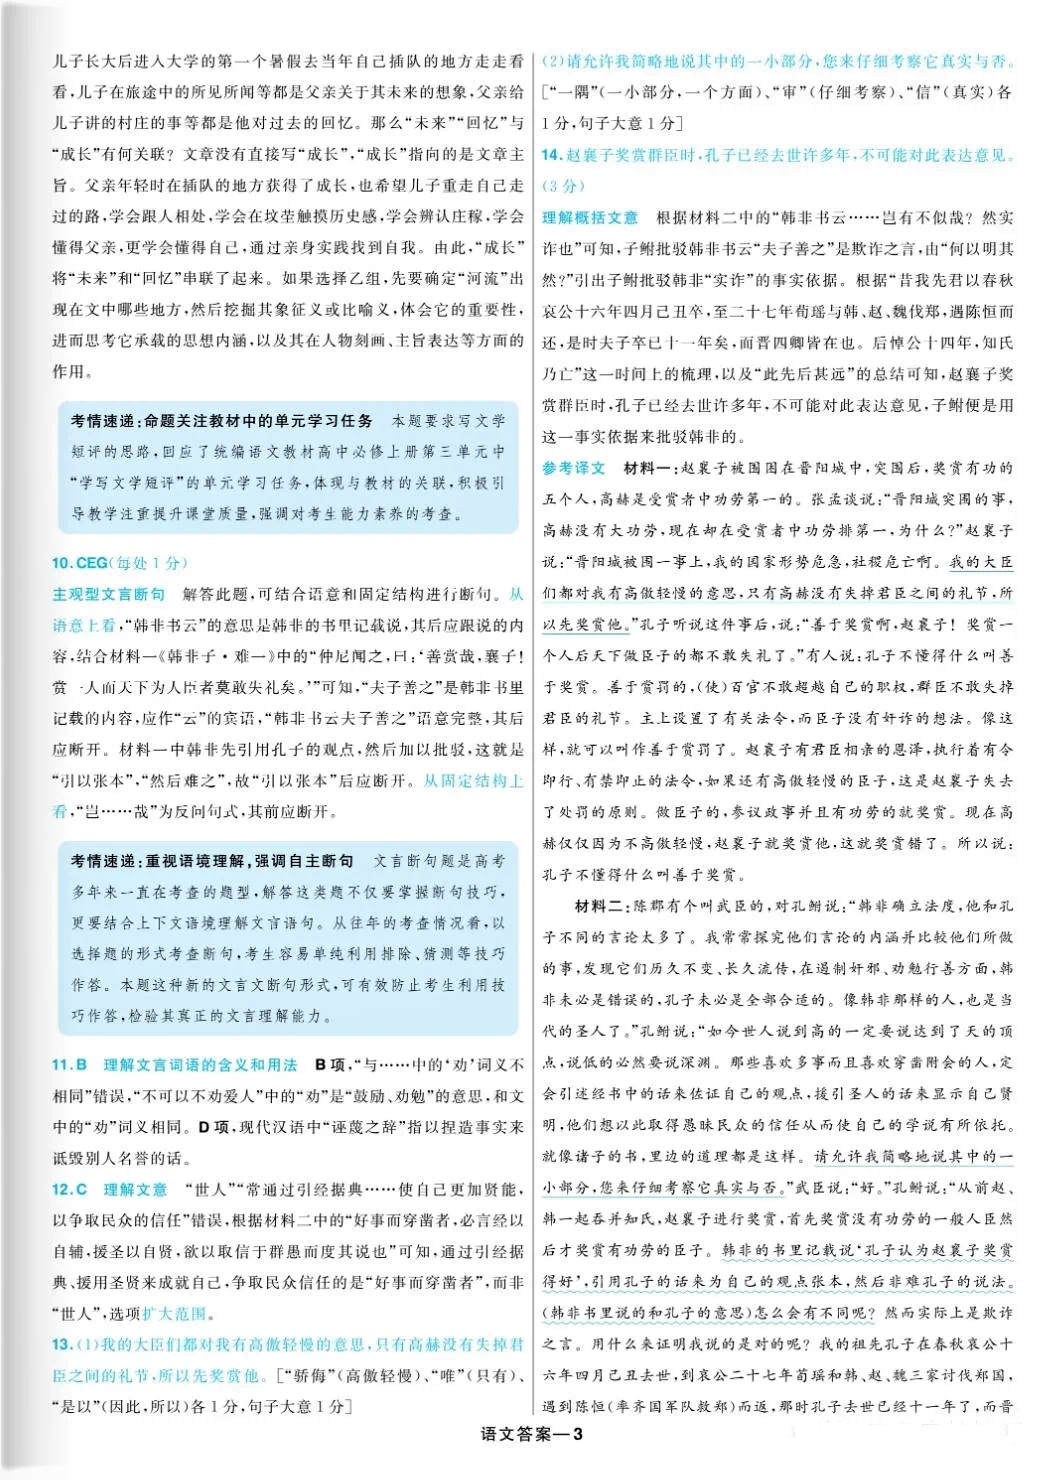 广东语文高考真题及答案电子版免费